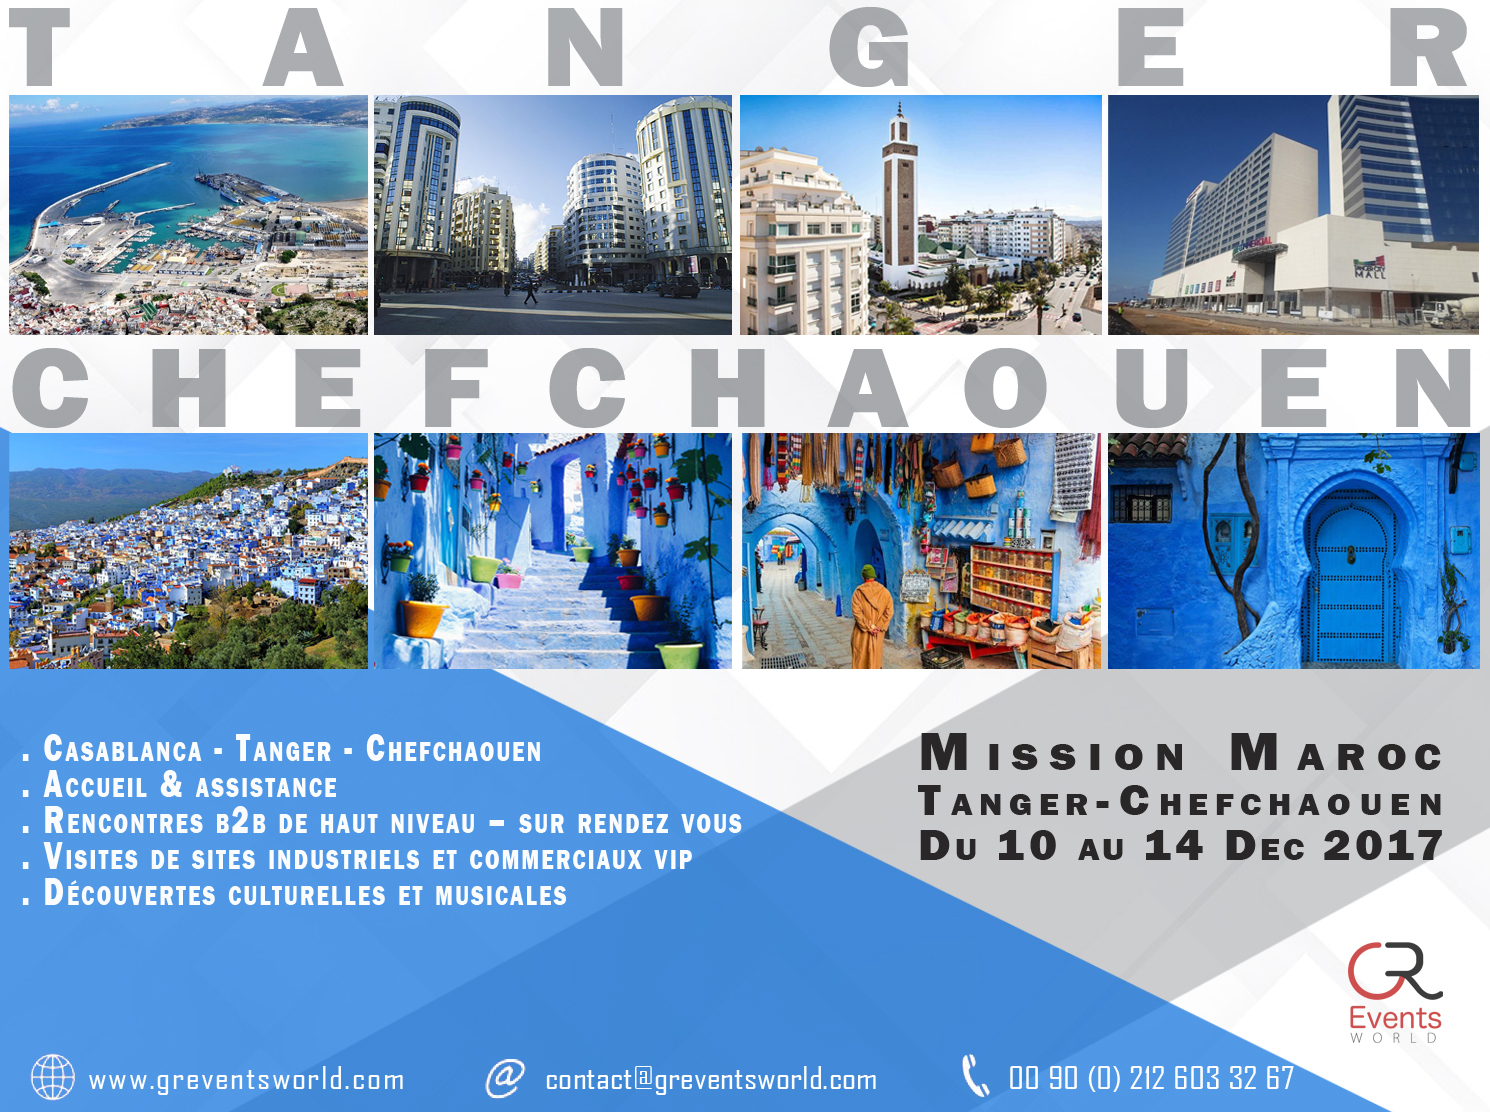 Mission Maroc Tanger-Chefchaouen Du 10 au 14 Dec 2017 